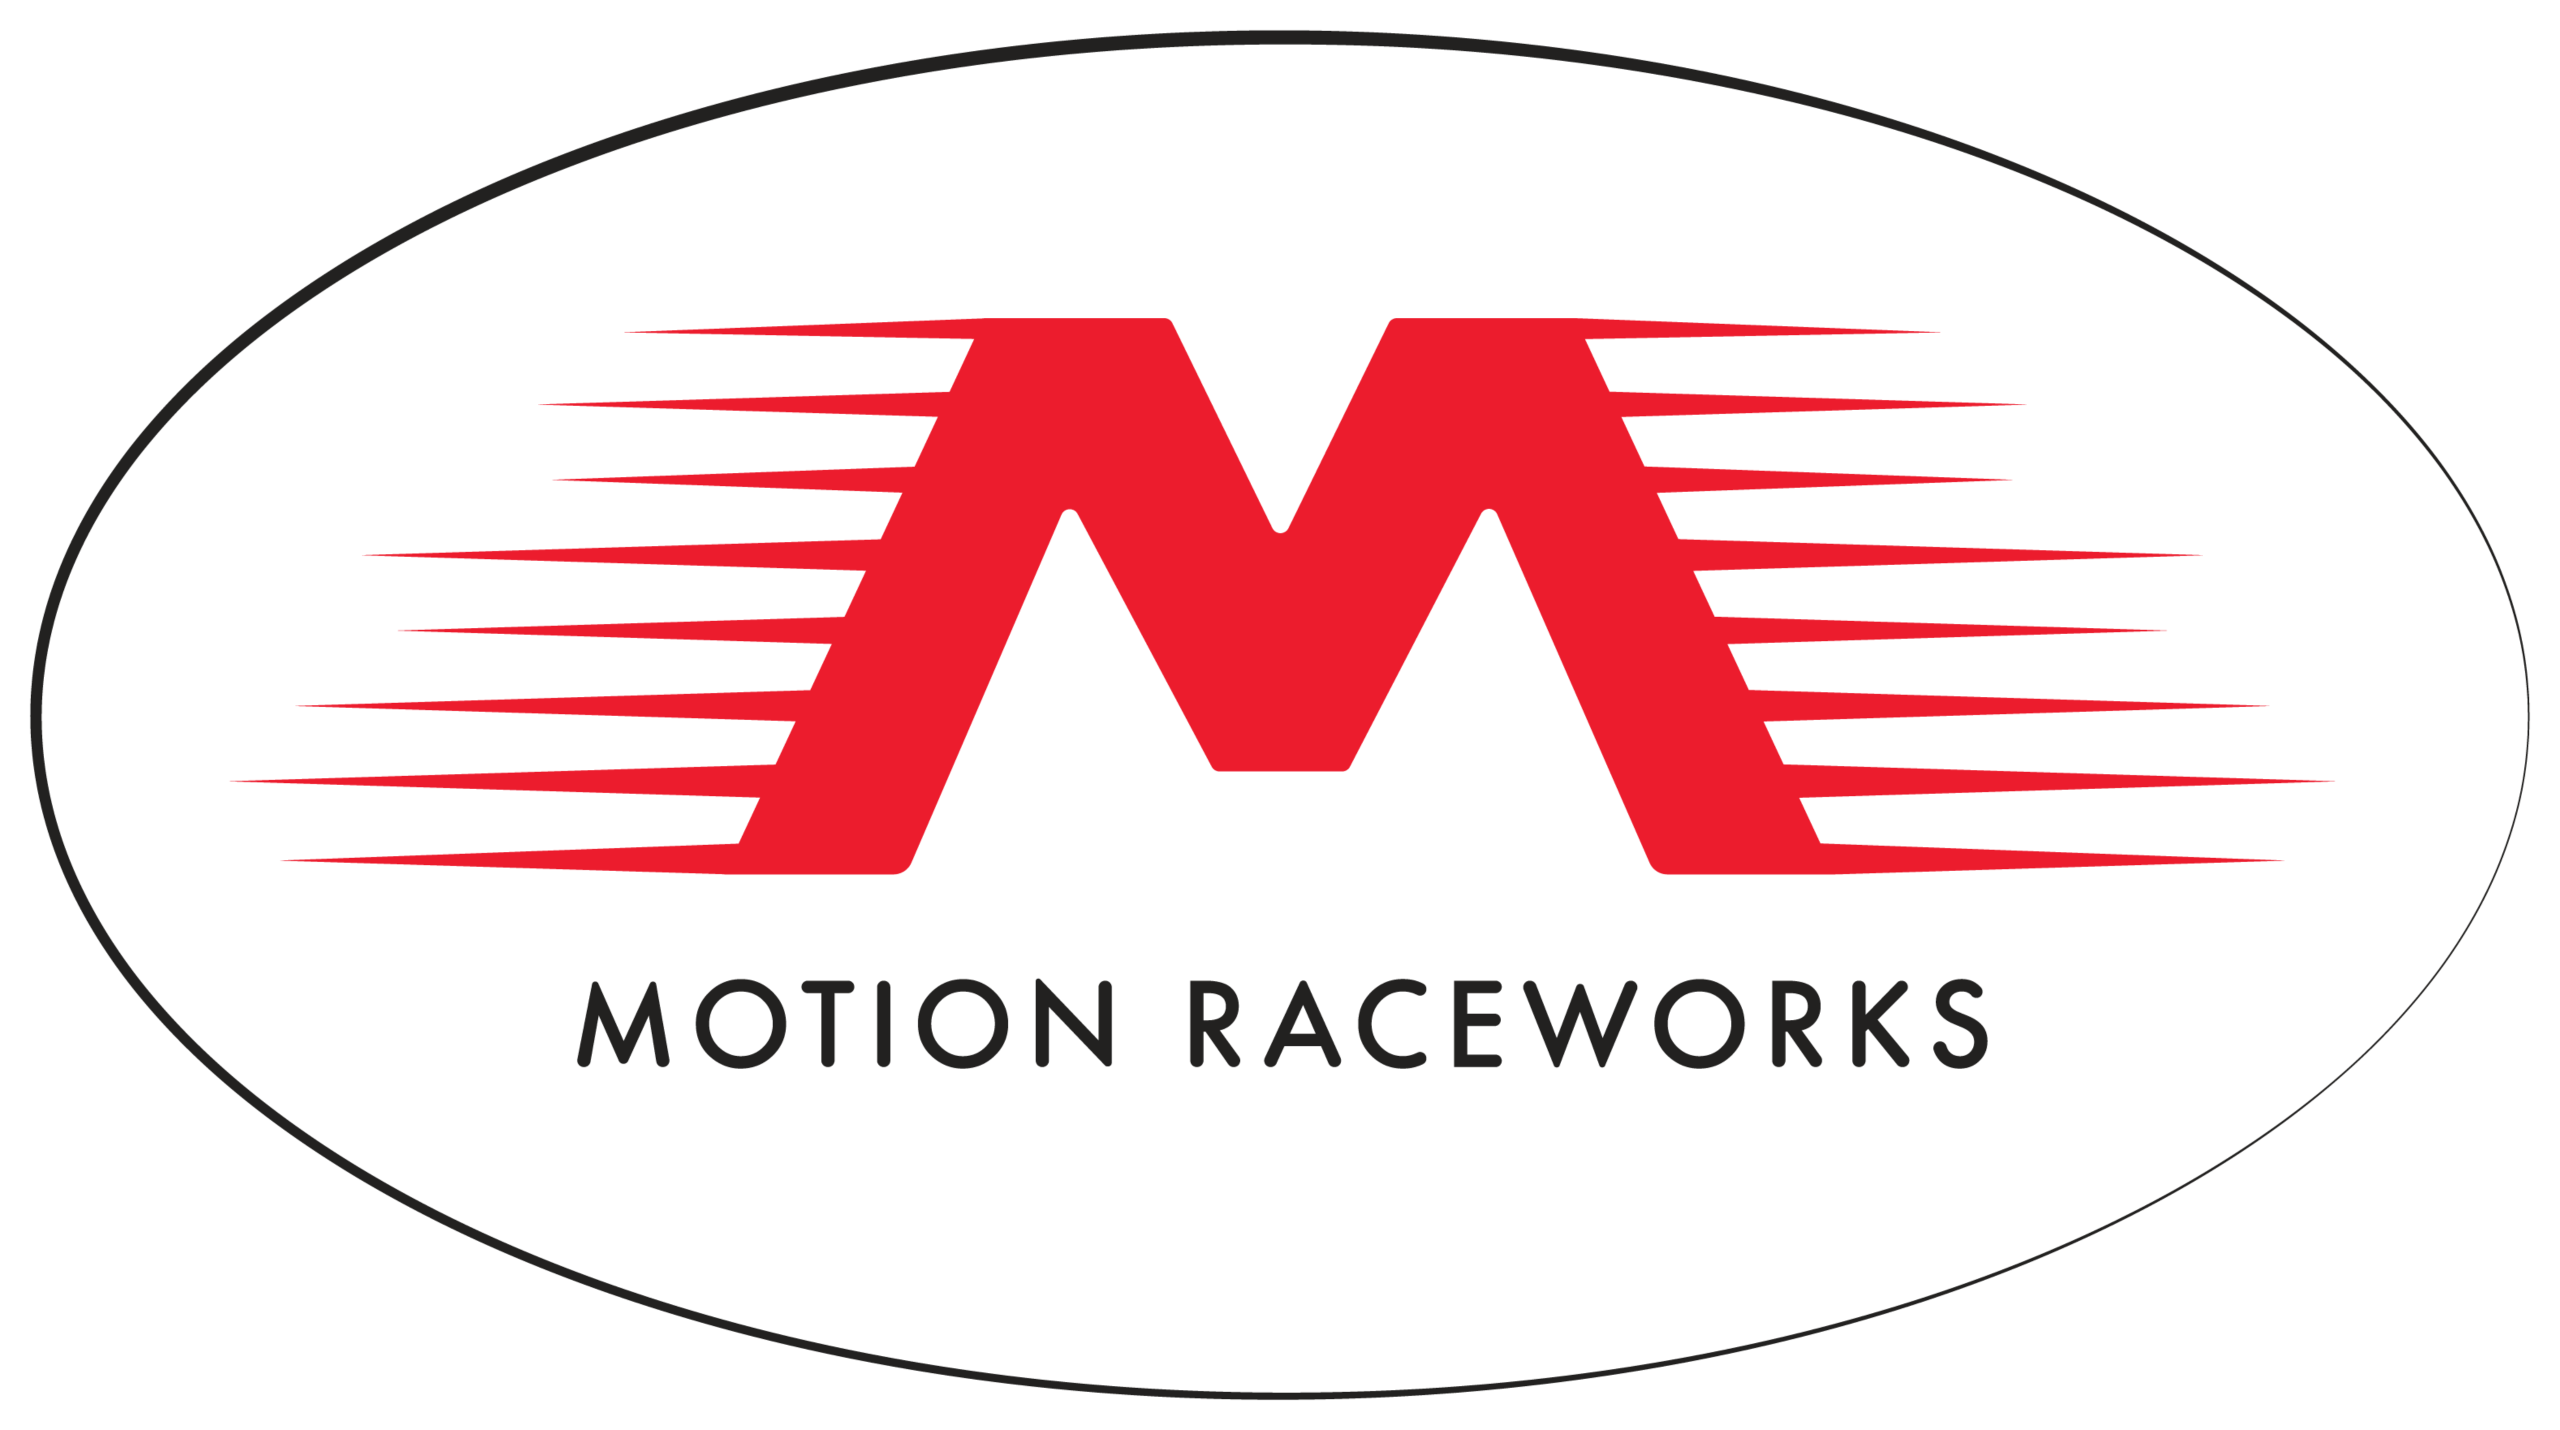 Motion Raceworks